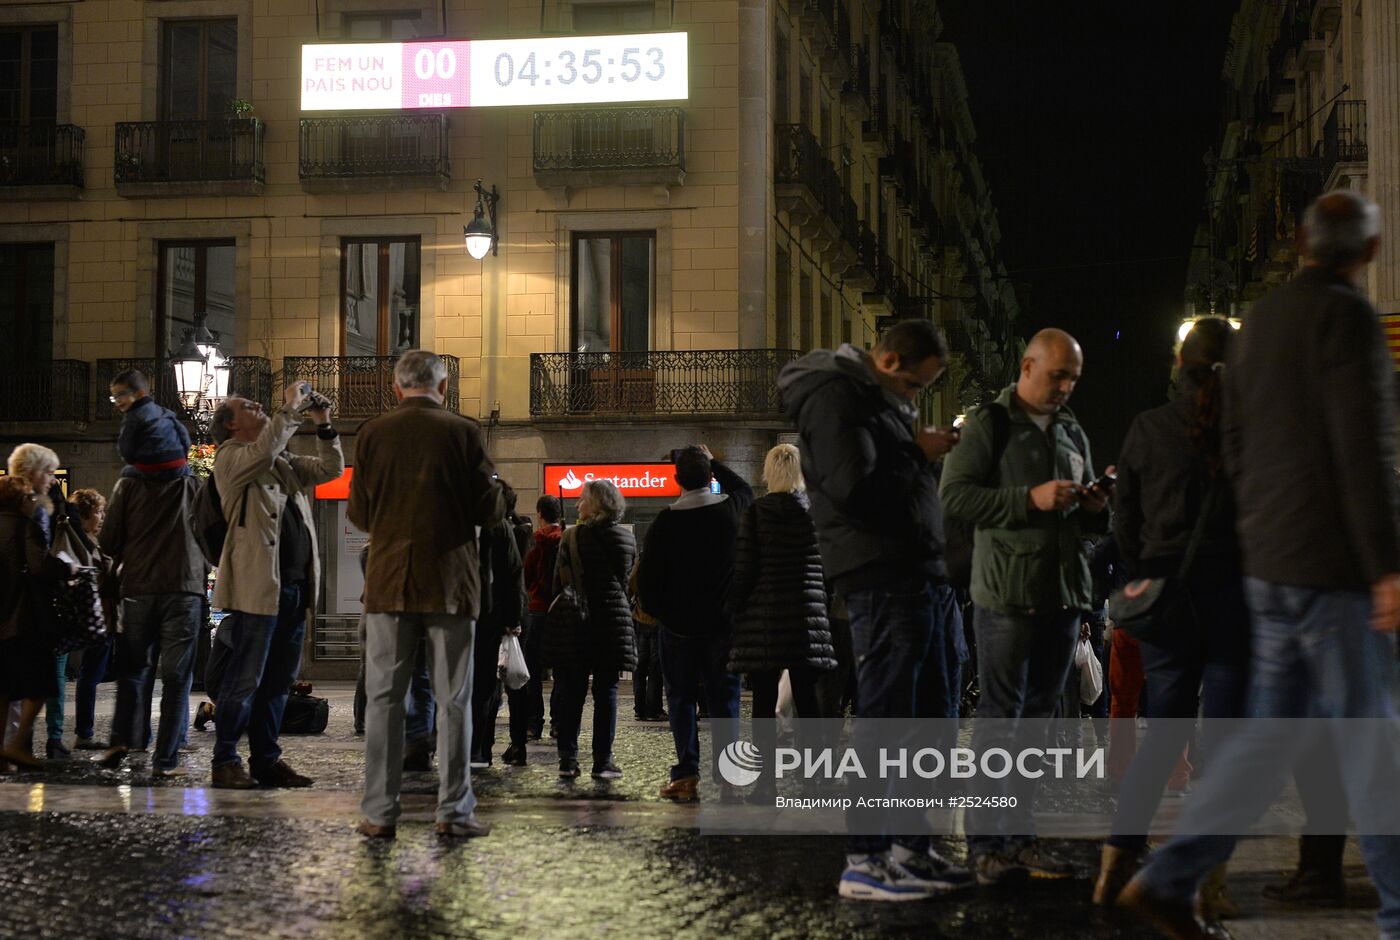 Жители Каталонии перед началом опроса о независимости